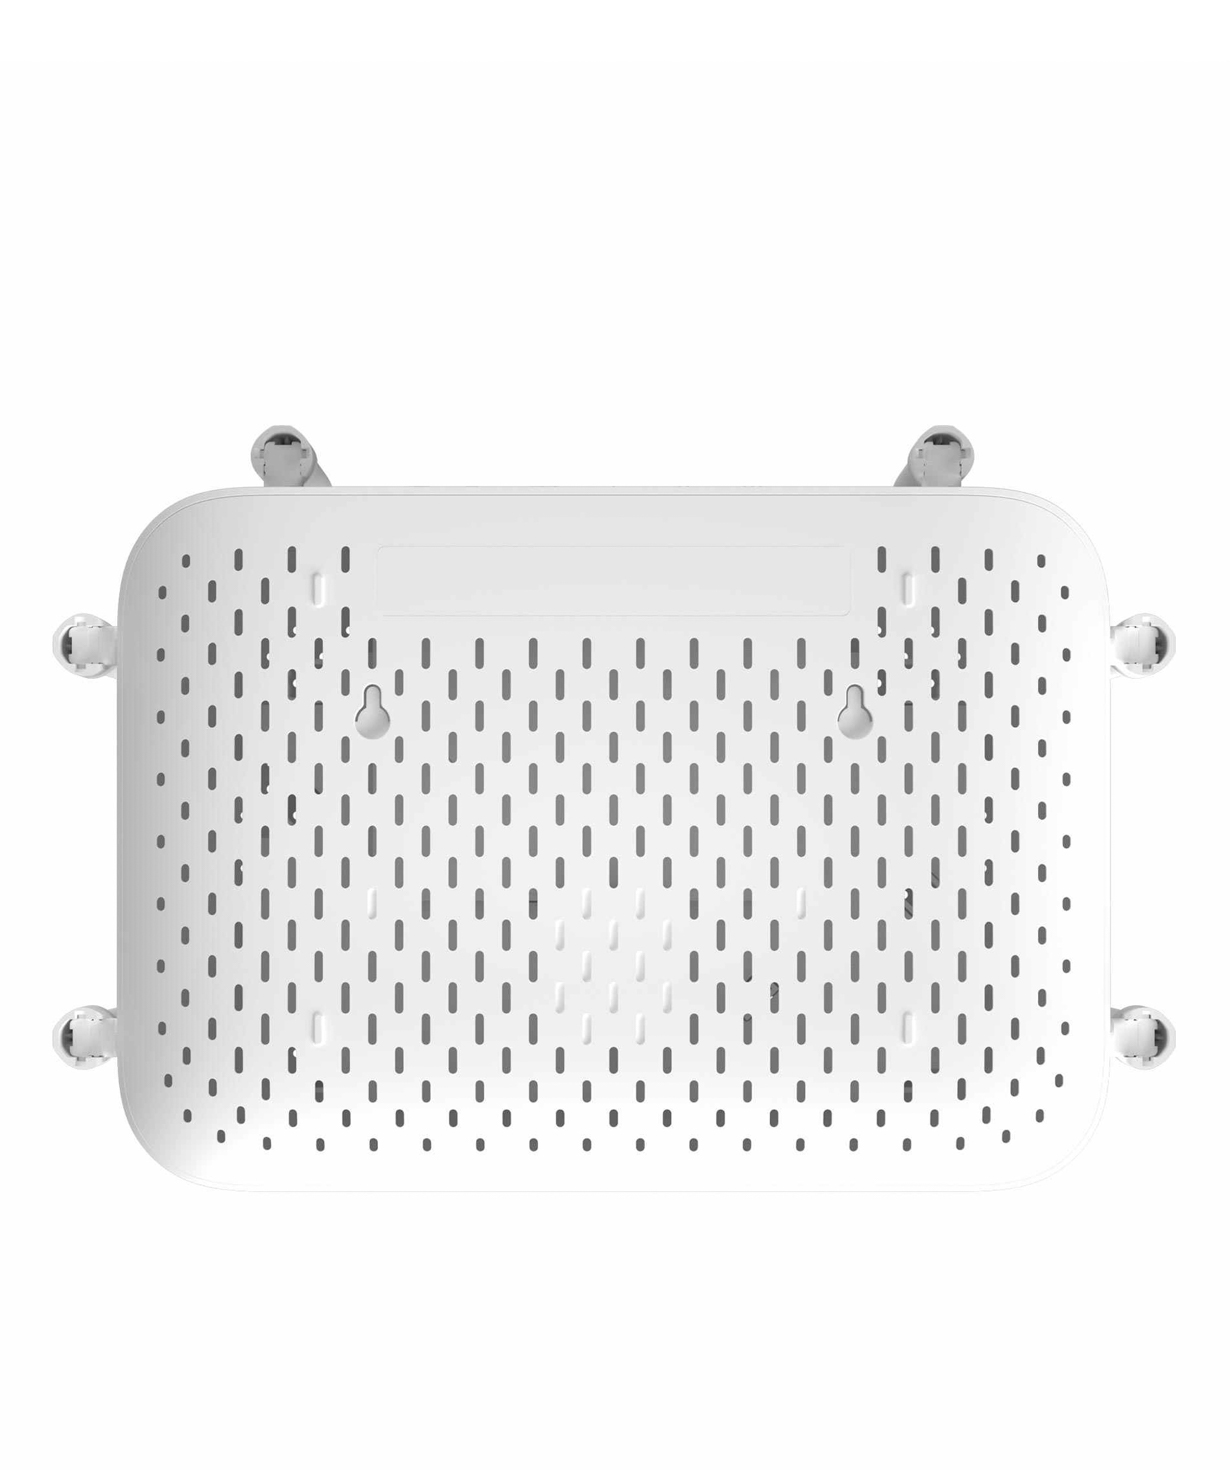 Router  `Xiaomi Redmi AC2100` (white)